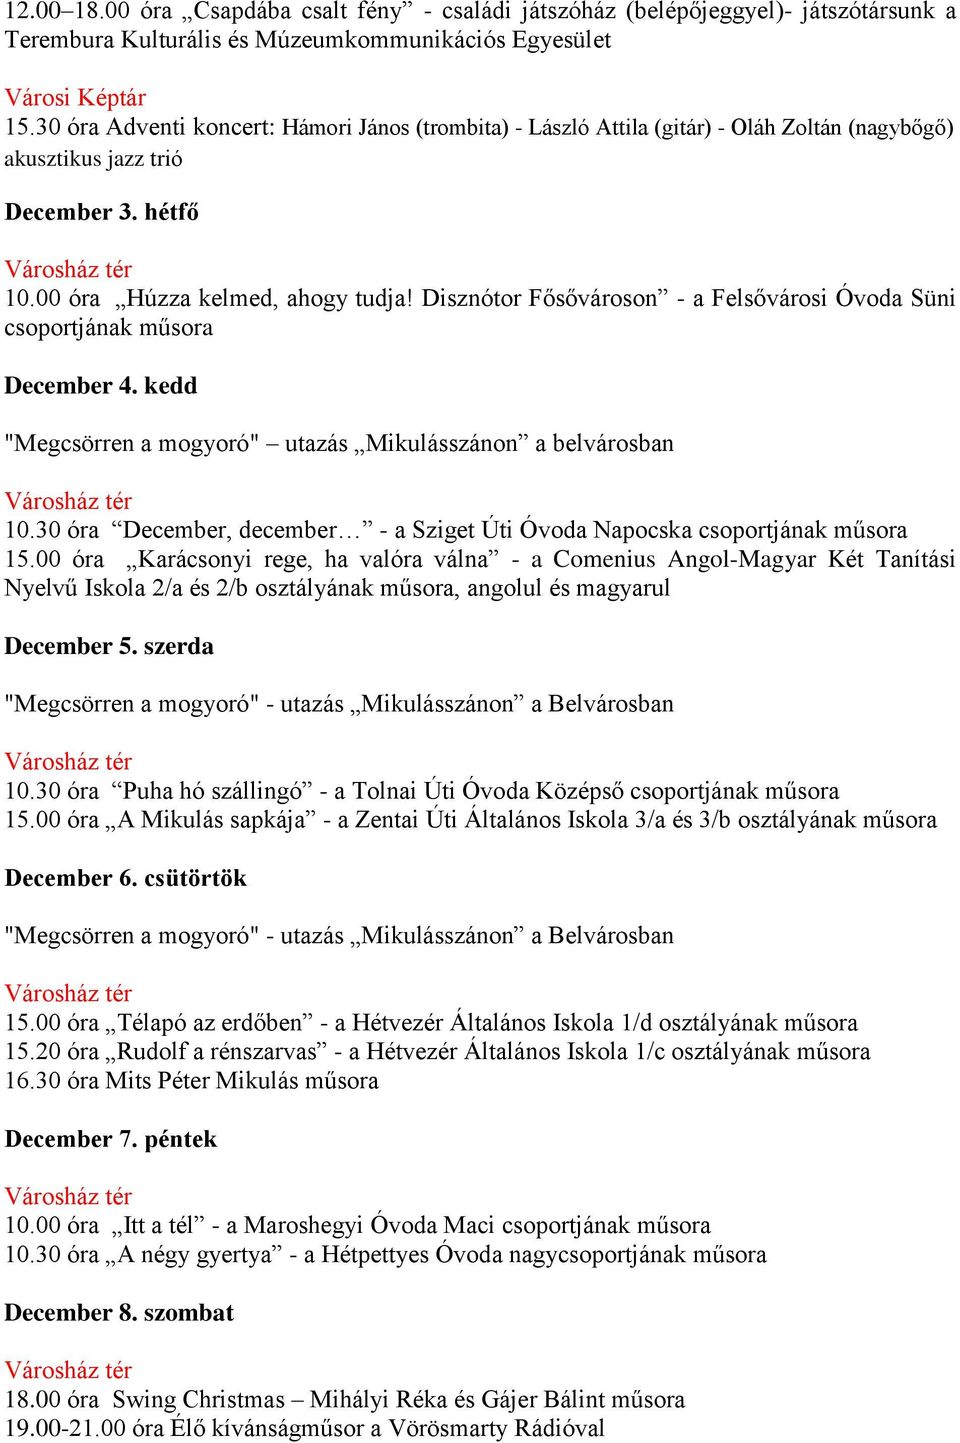 Disznótor Fősővároson - a Felsővárosi Óvoda Süni csoportjának December 4. kedd "Megcsörren a mogyoró" utazás Mikulásszánon a belvárosban 10.